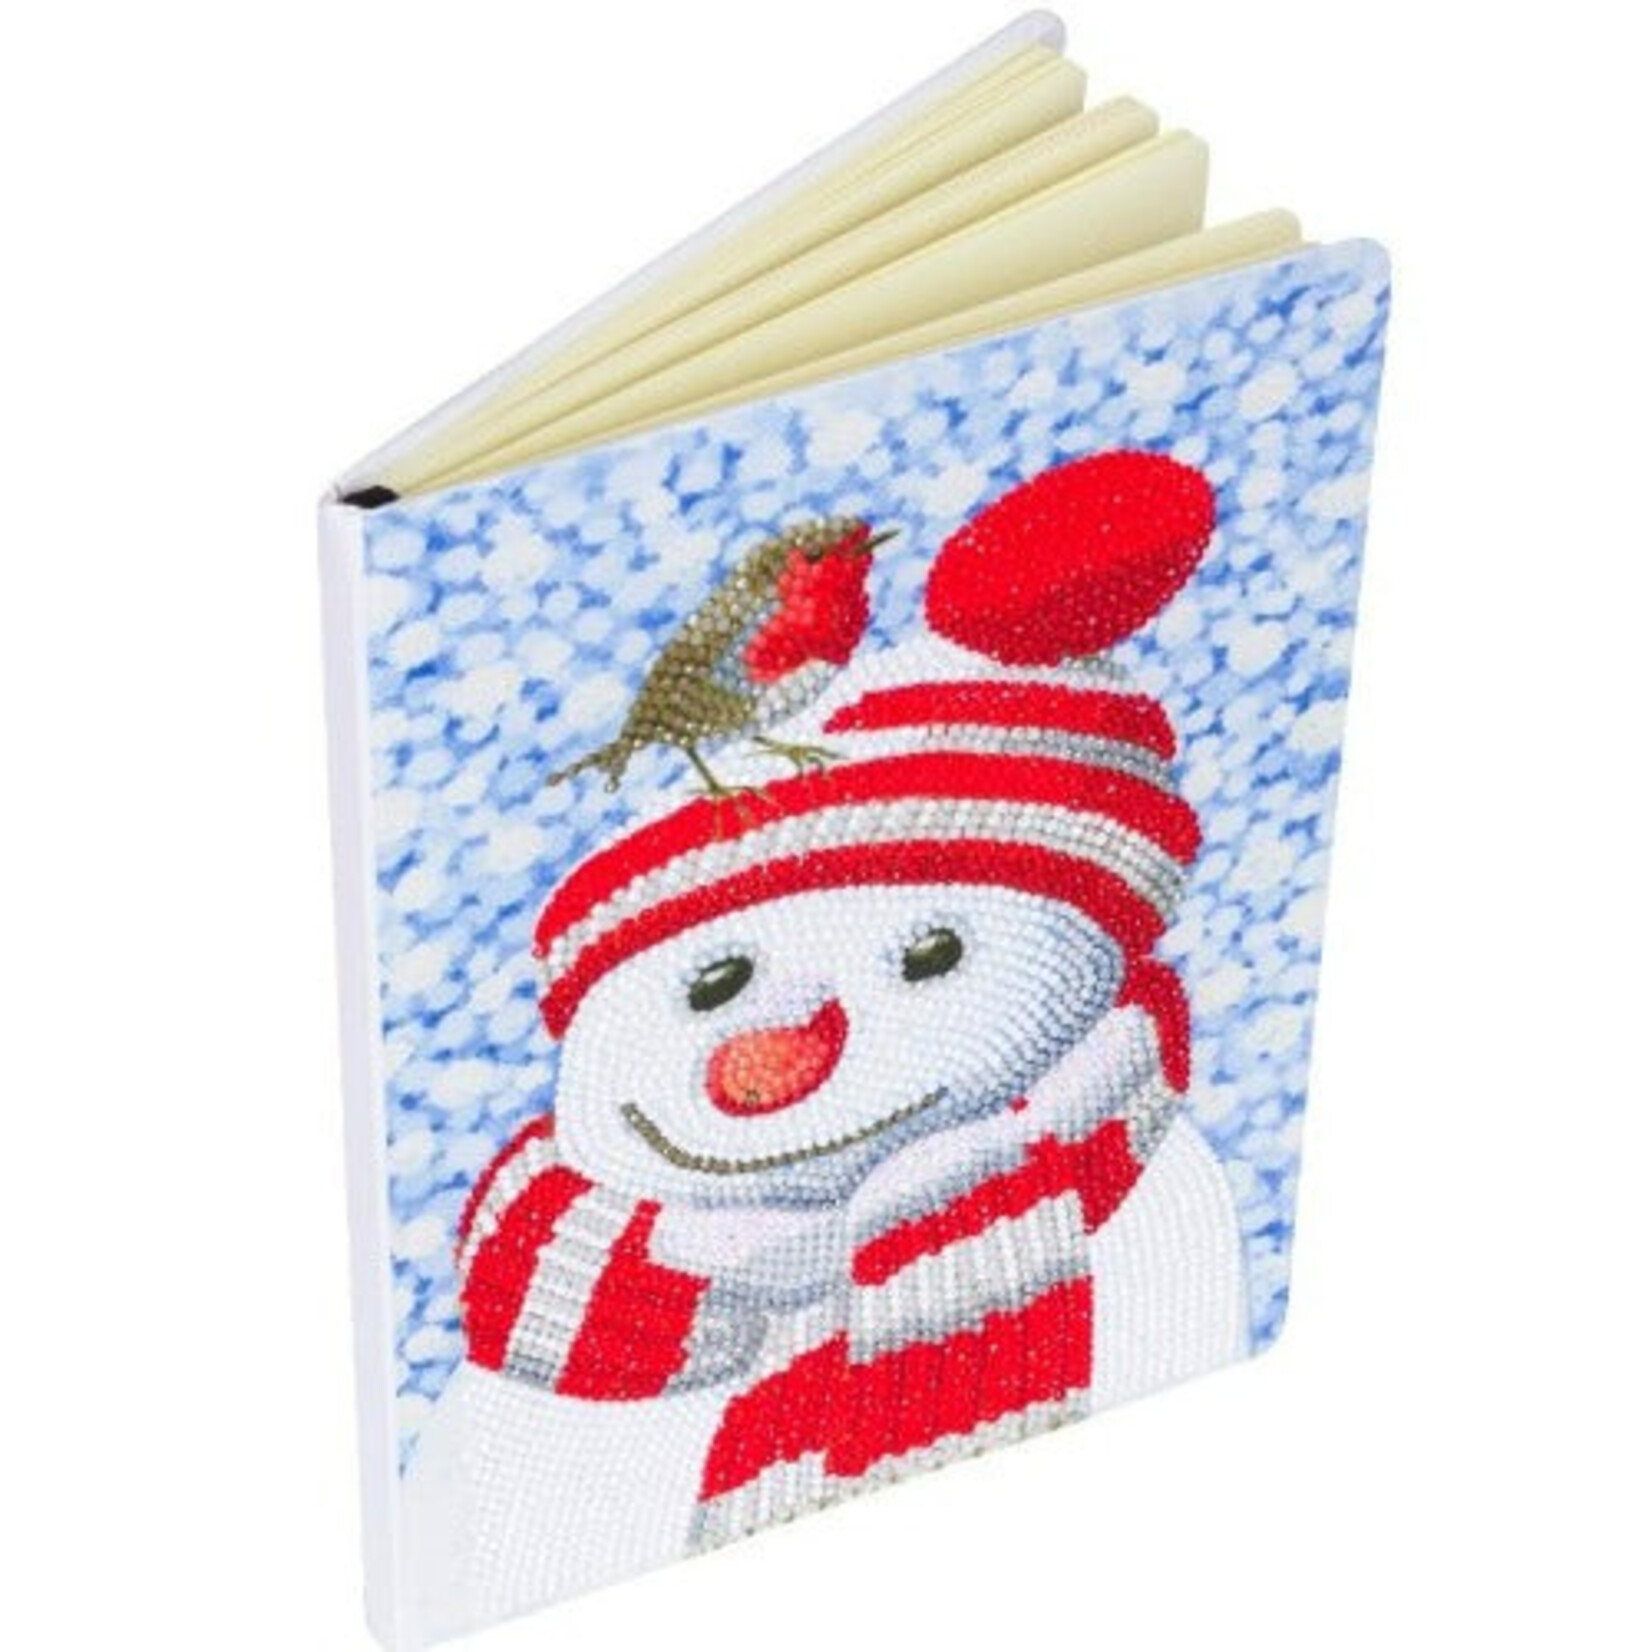 Craft Buddy Crystal Art - Carnet : Friendly Snowman